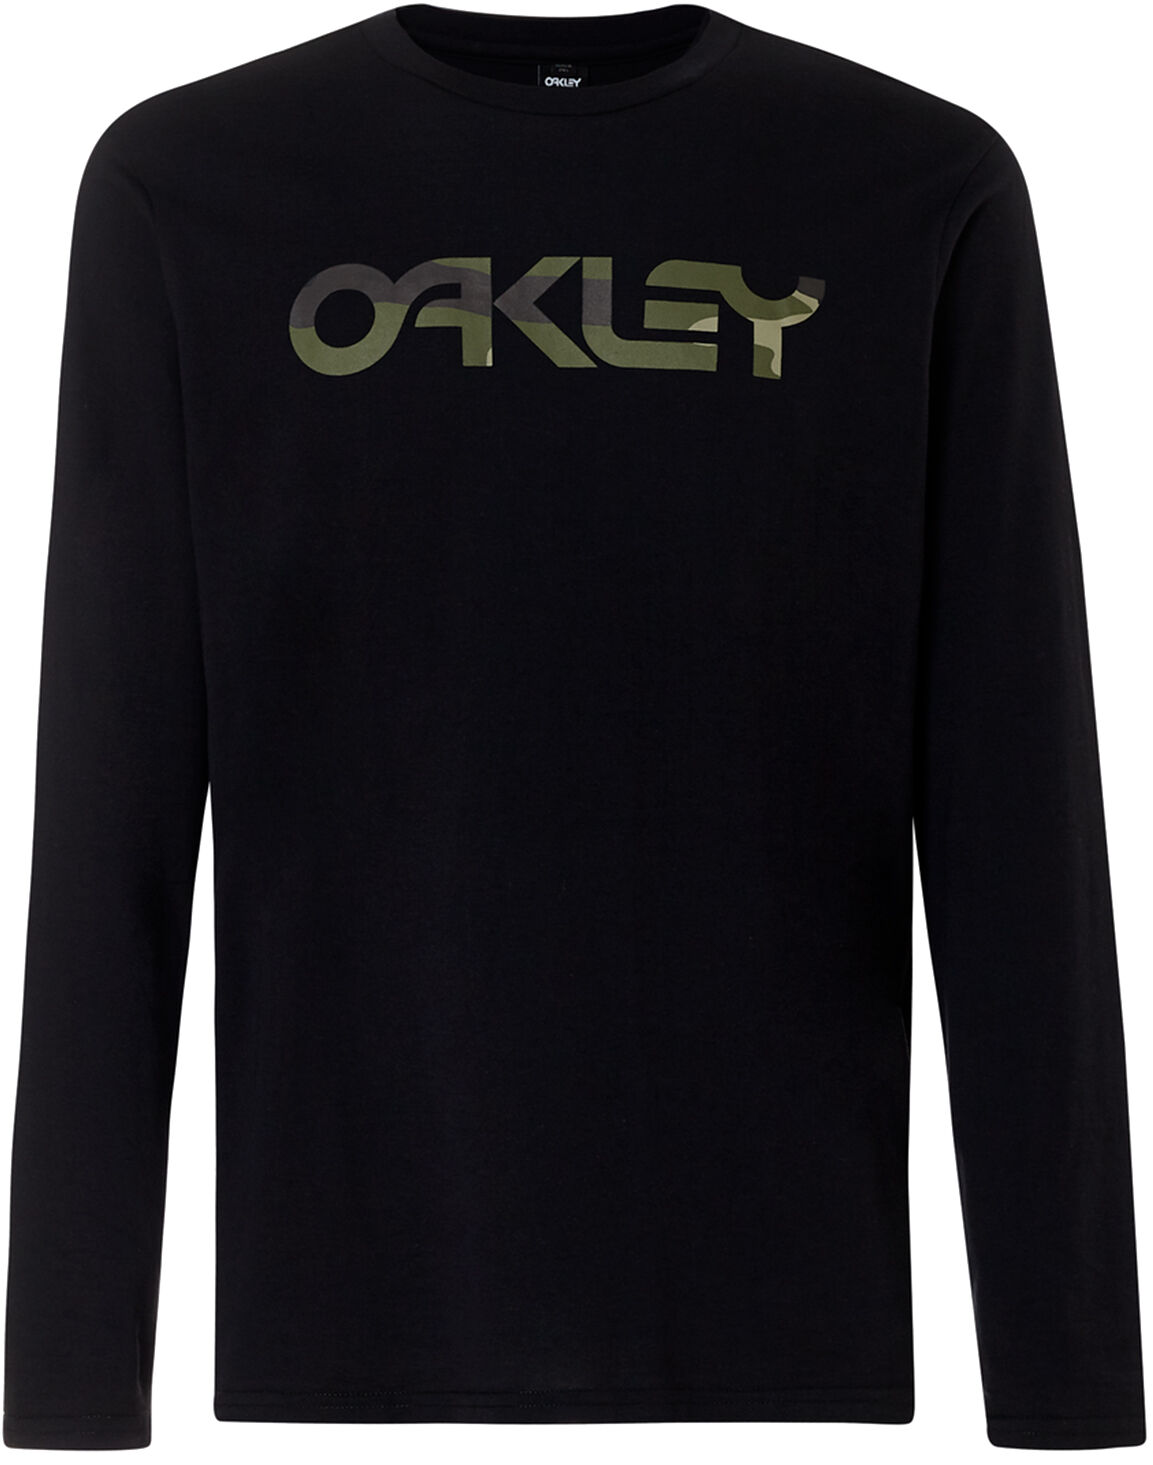 Oakley MARK II LONG SLEEVE BLACKOUT S